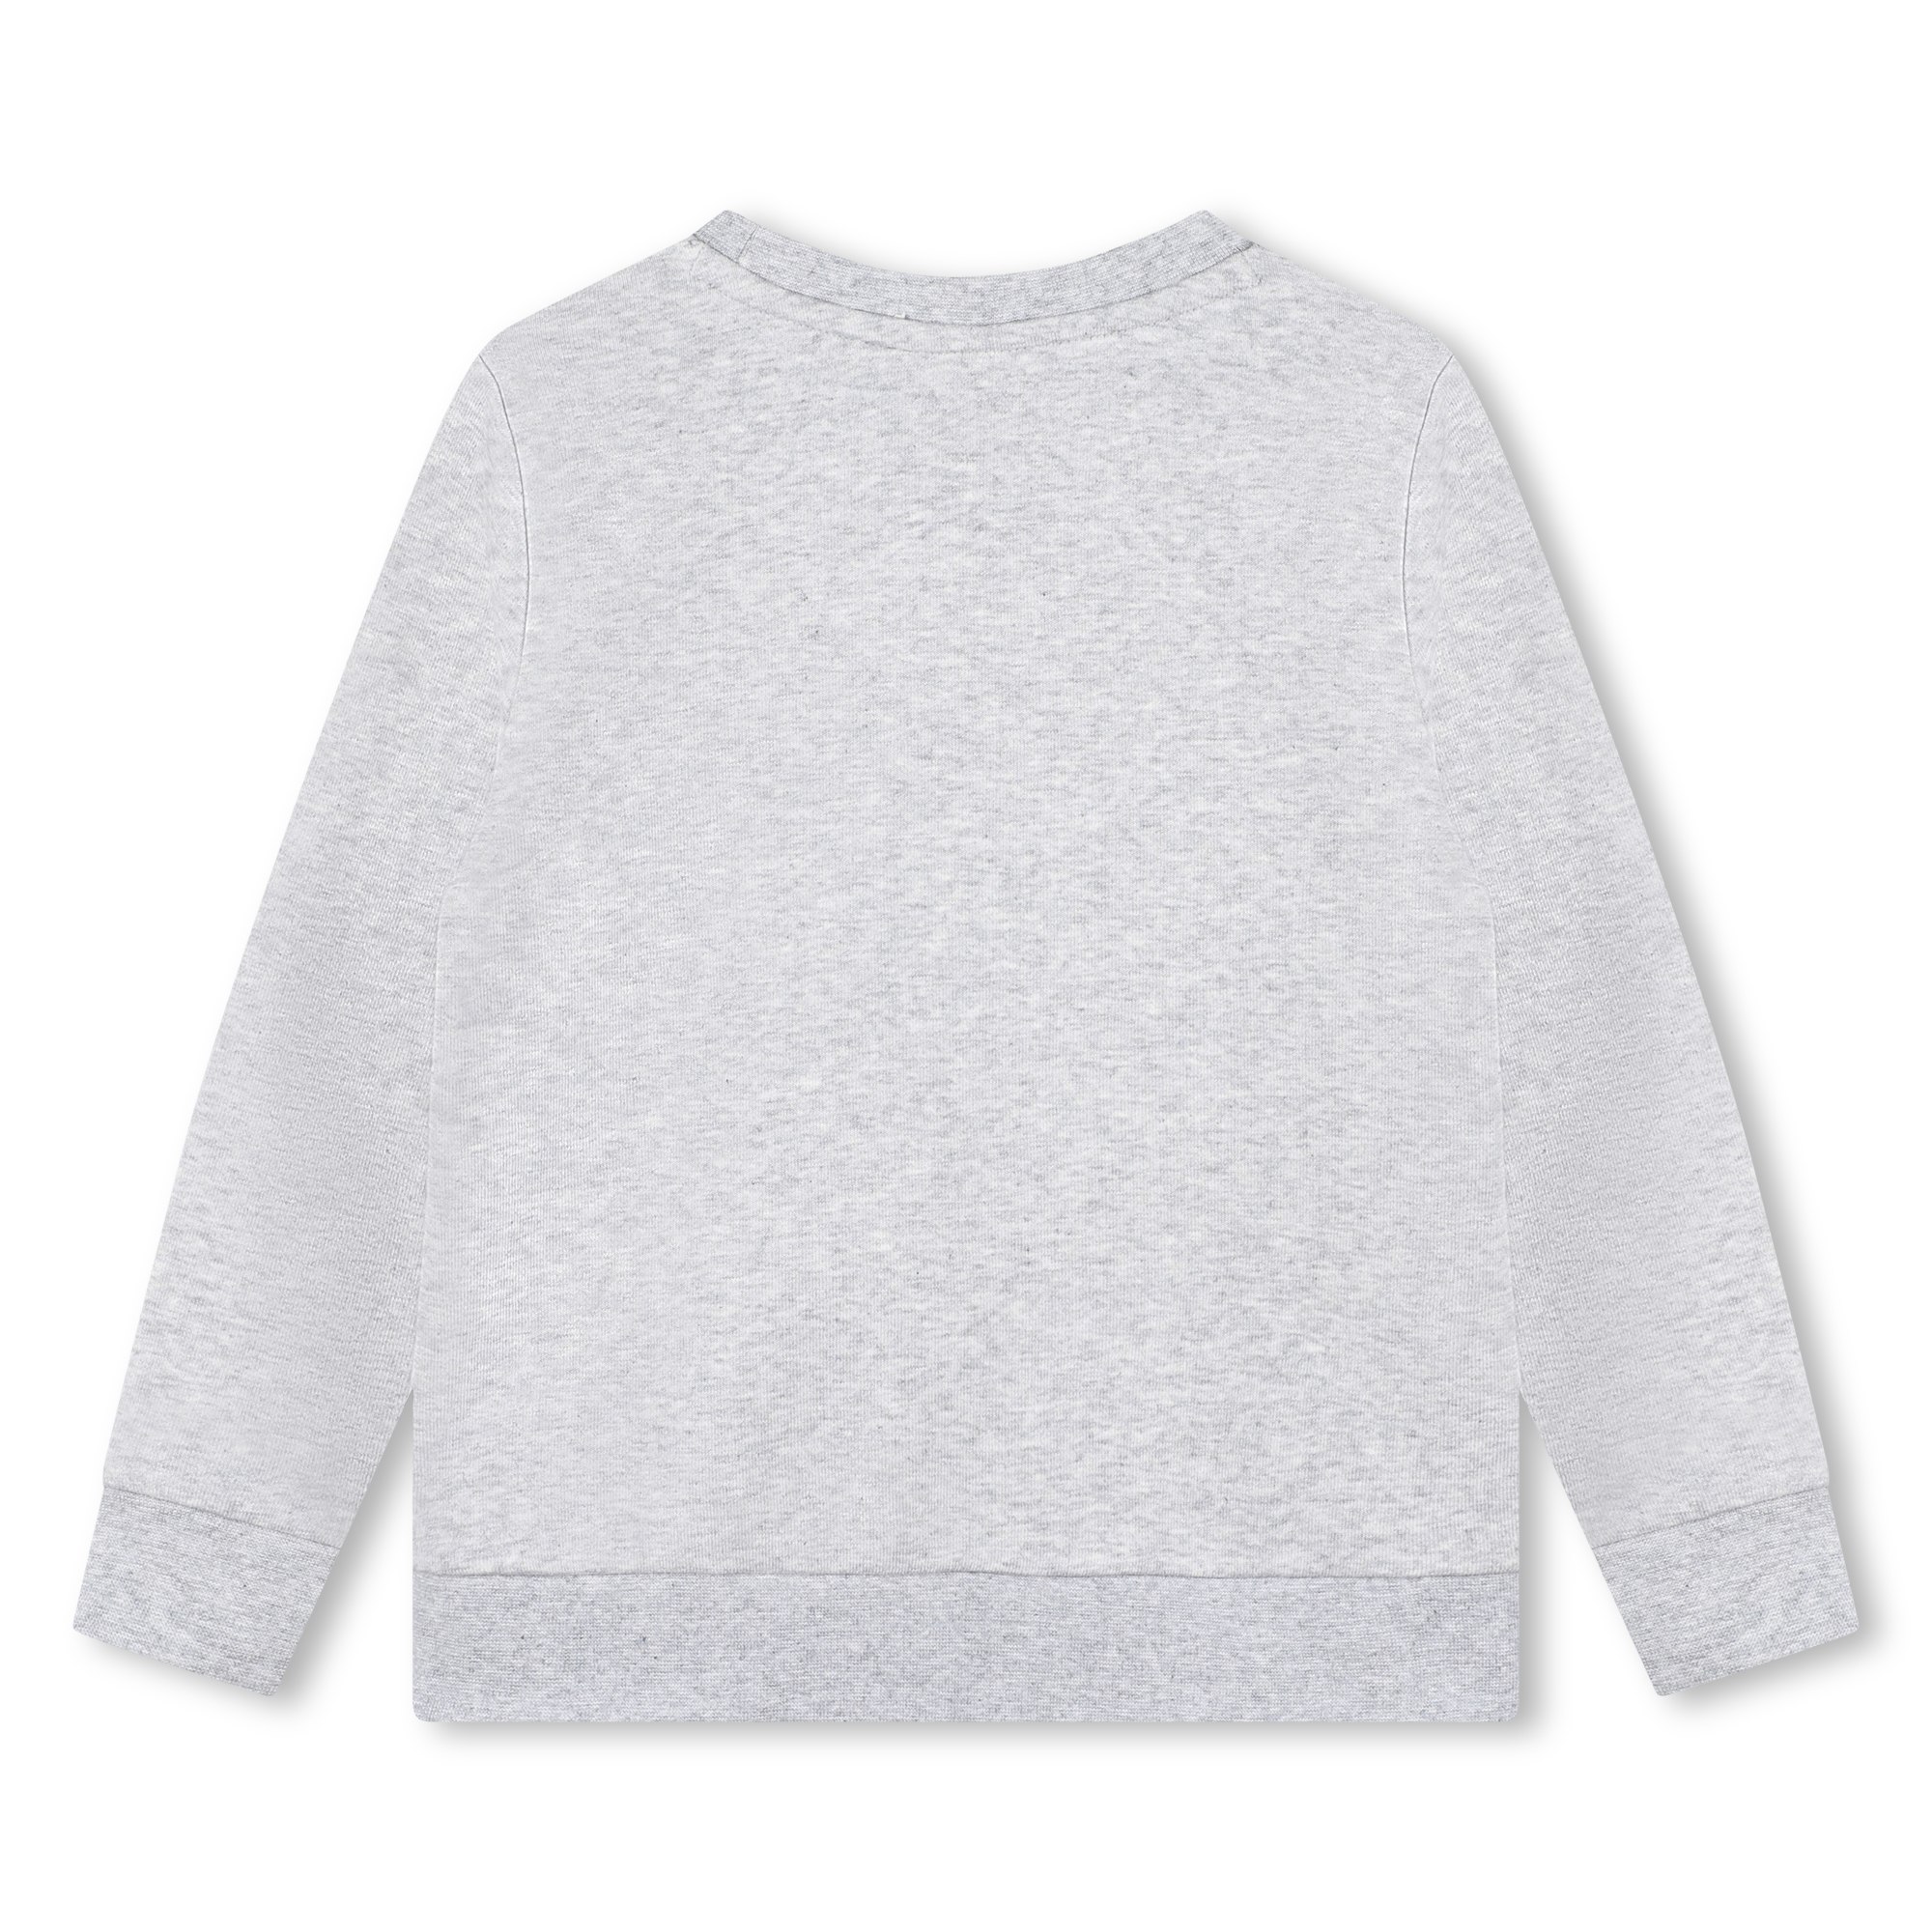 Printed fleece sweatshirt BOSS for BOY